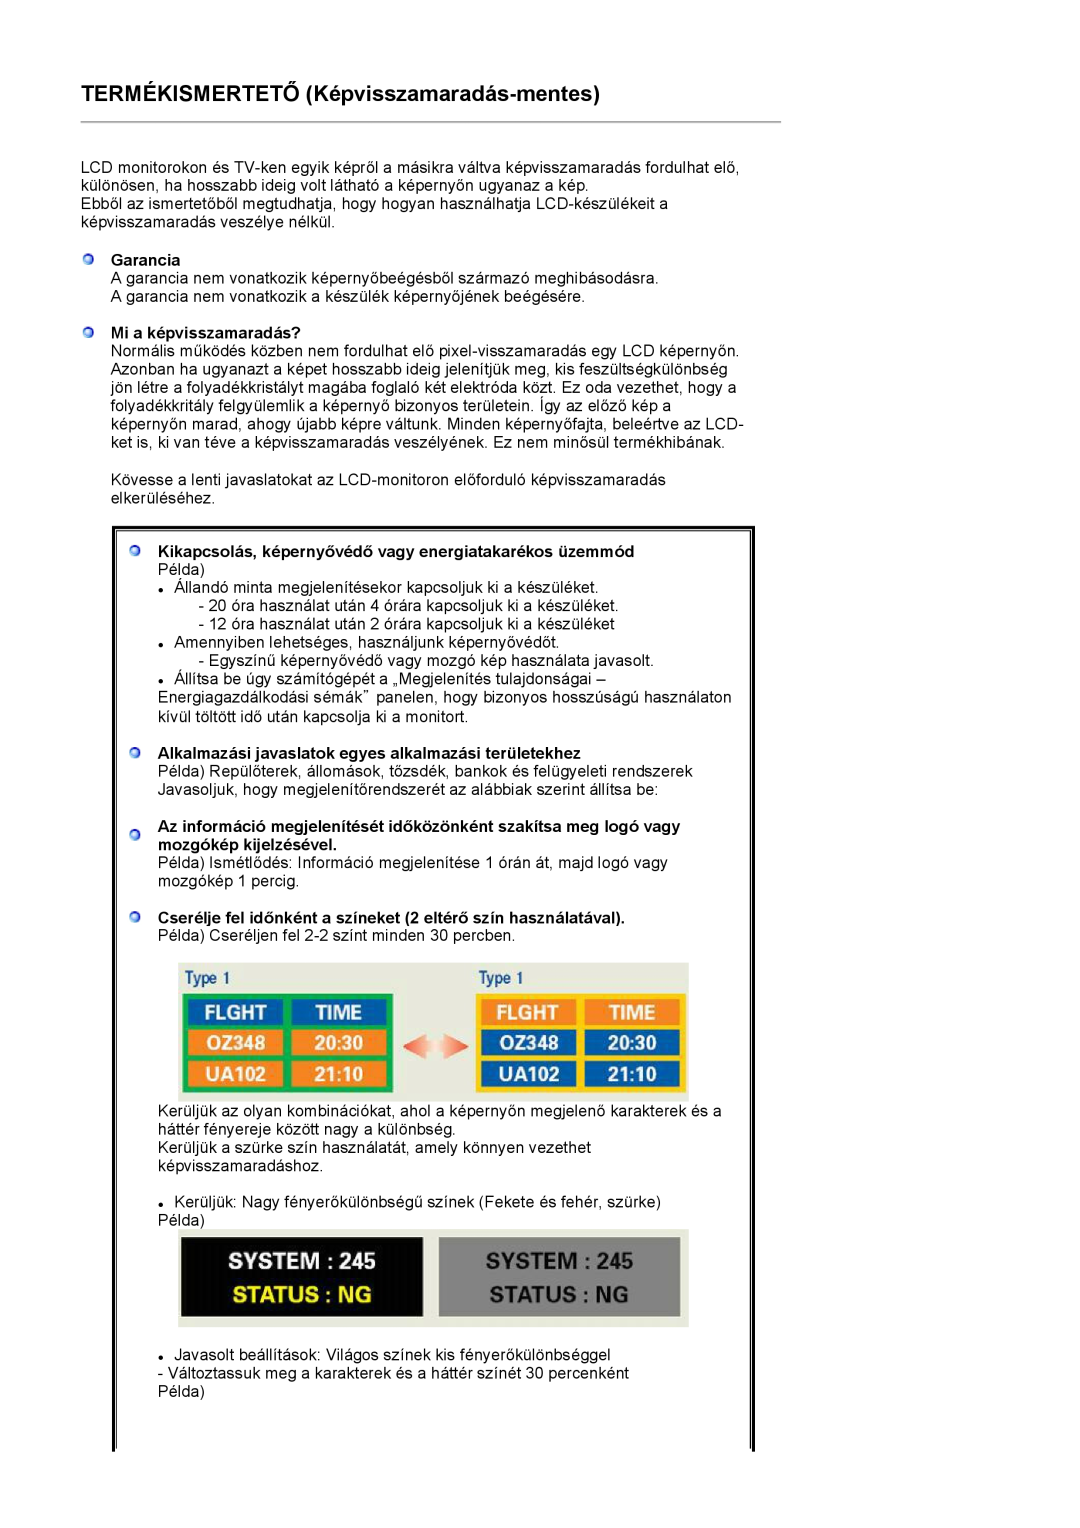 Samsung LS22PEBSFV/TRU manual Garancia, Mi a képvisszamaradás?, Kikapcsolás, képernyővédő vagy energiatakarékos üzemmód 